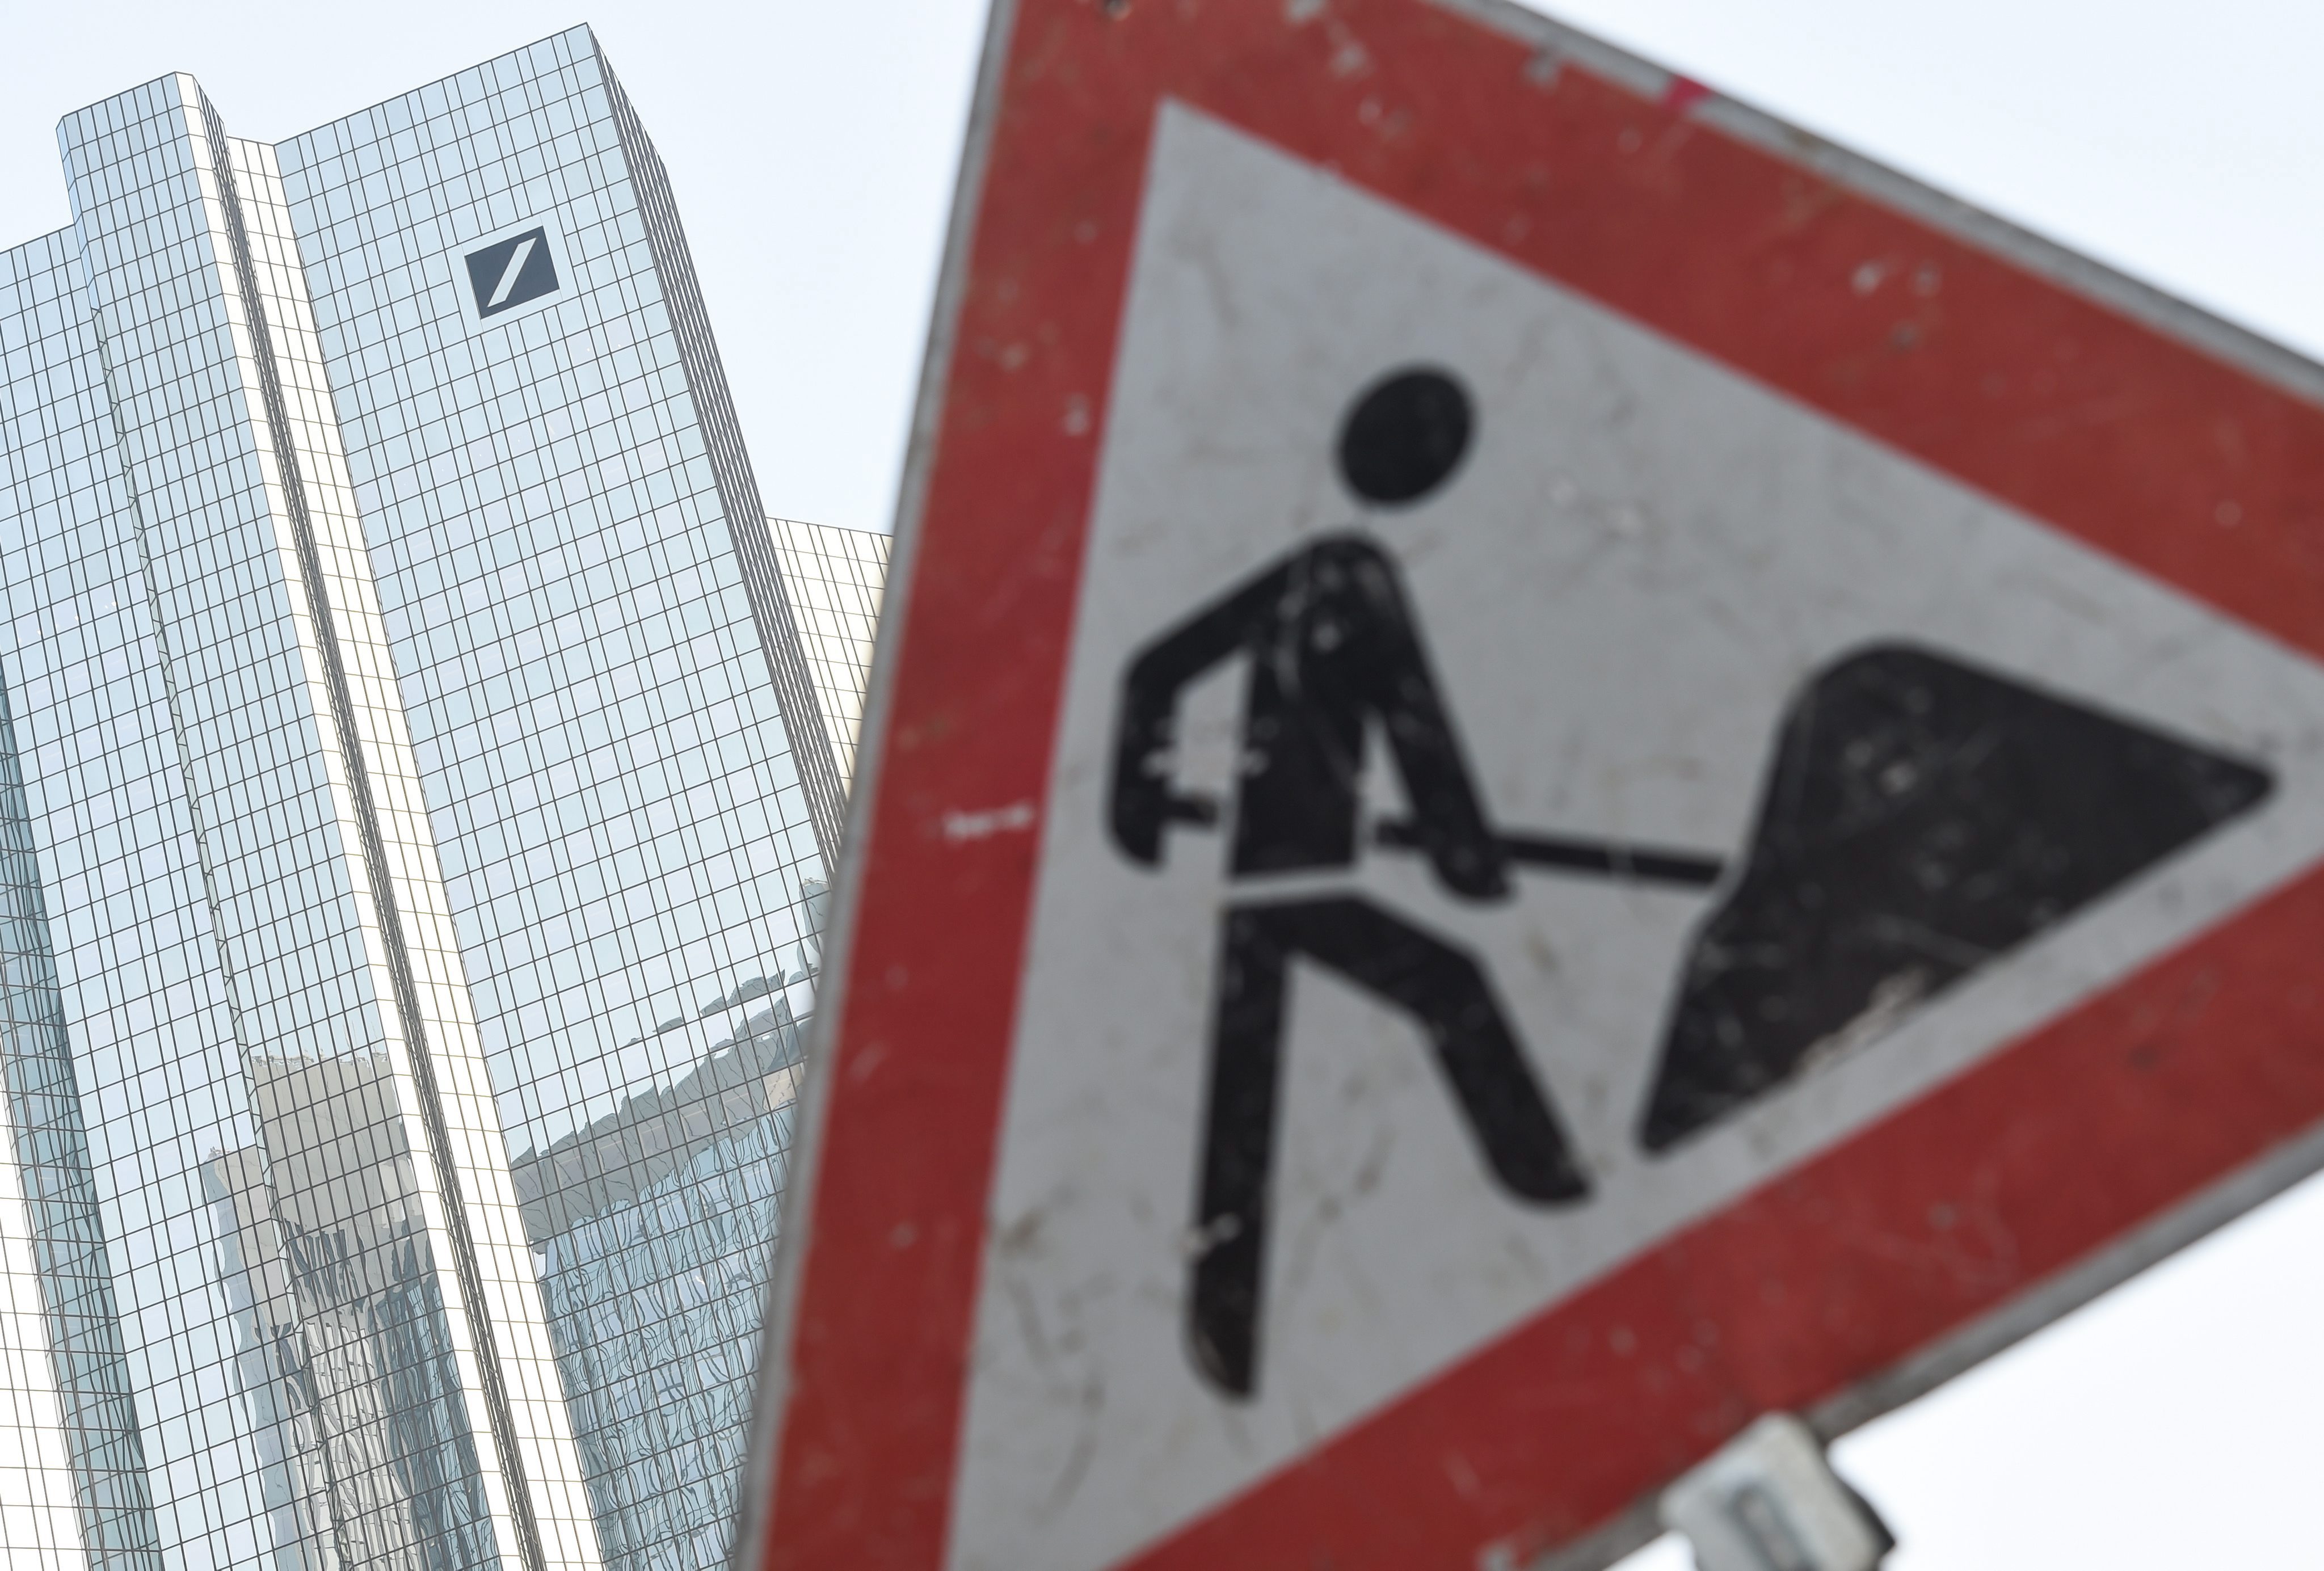 Deutsche bank is dit weekend officieel in staat van beschuldiging gesteld voor het derivatenschandaal bij het Italiaanse Banco Monte dei Paschi di Siena. Daarmee heeft het geplaagde financiële concern er weer een nieuwe kopzorg bij.